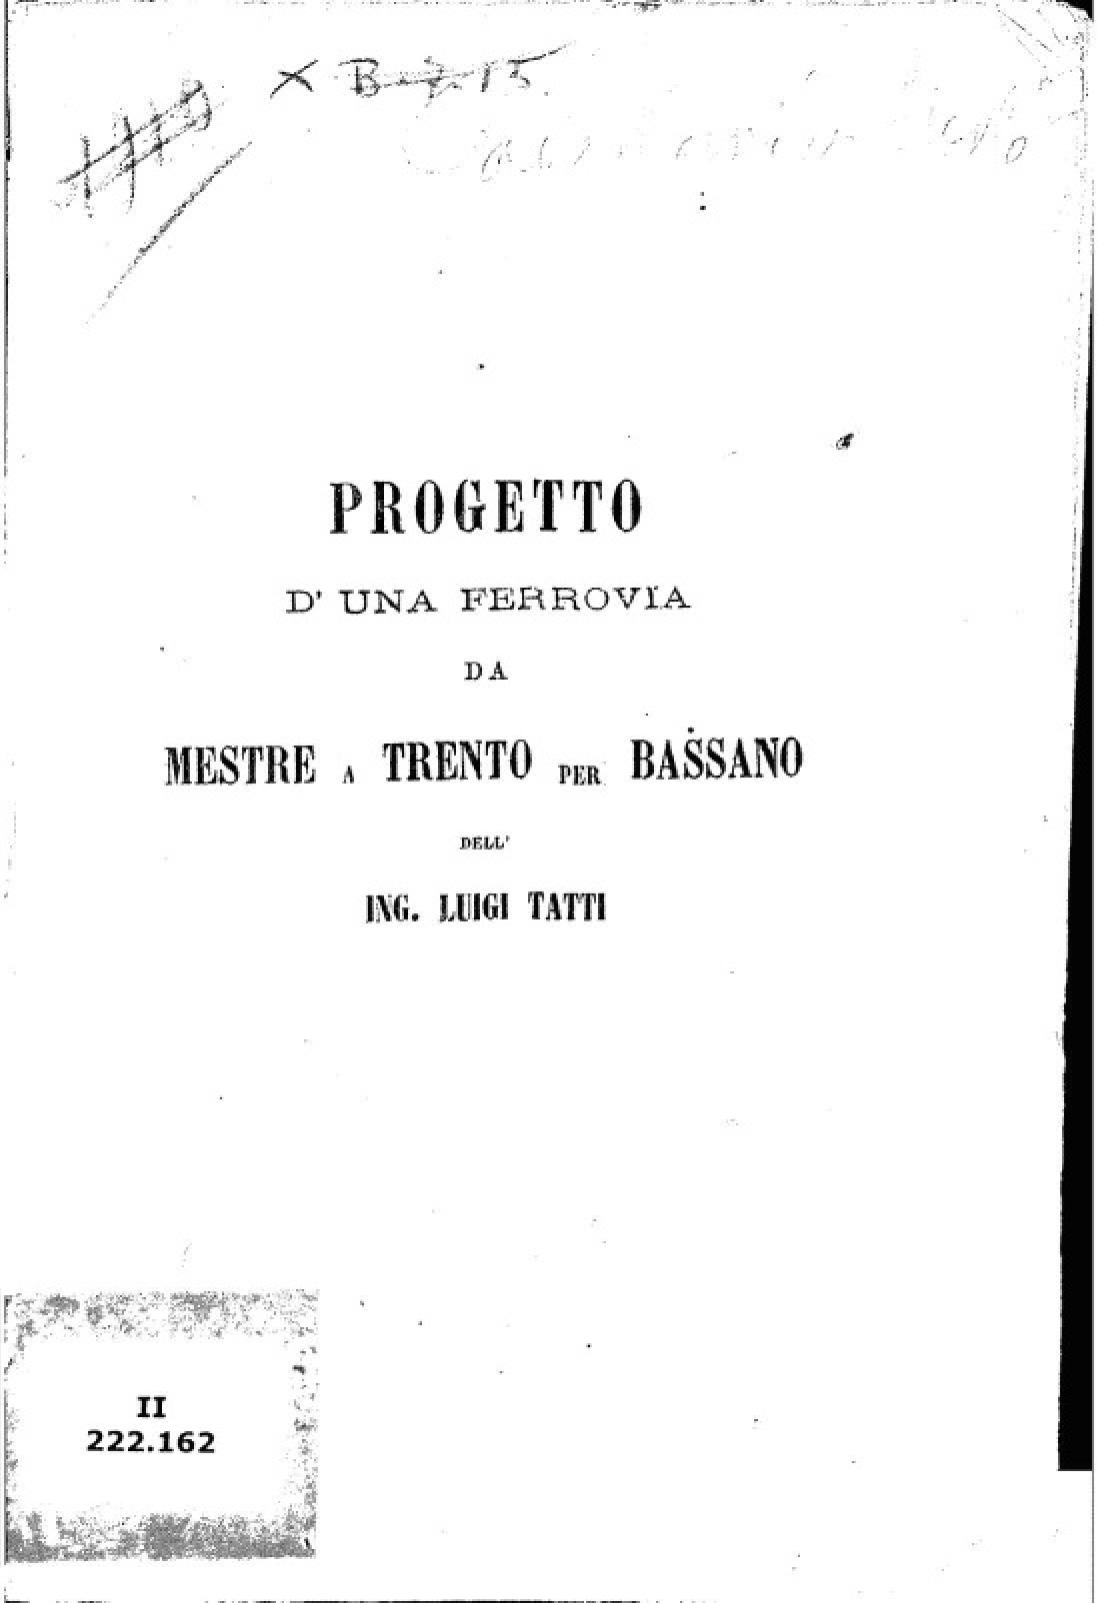 Progetto d’una ferrovia da Mestre a Trento per Bassano dell’ing. Luigi Tatti